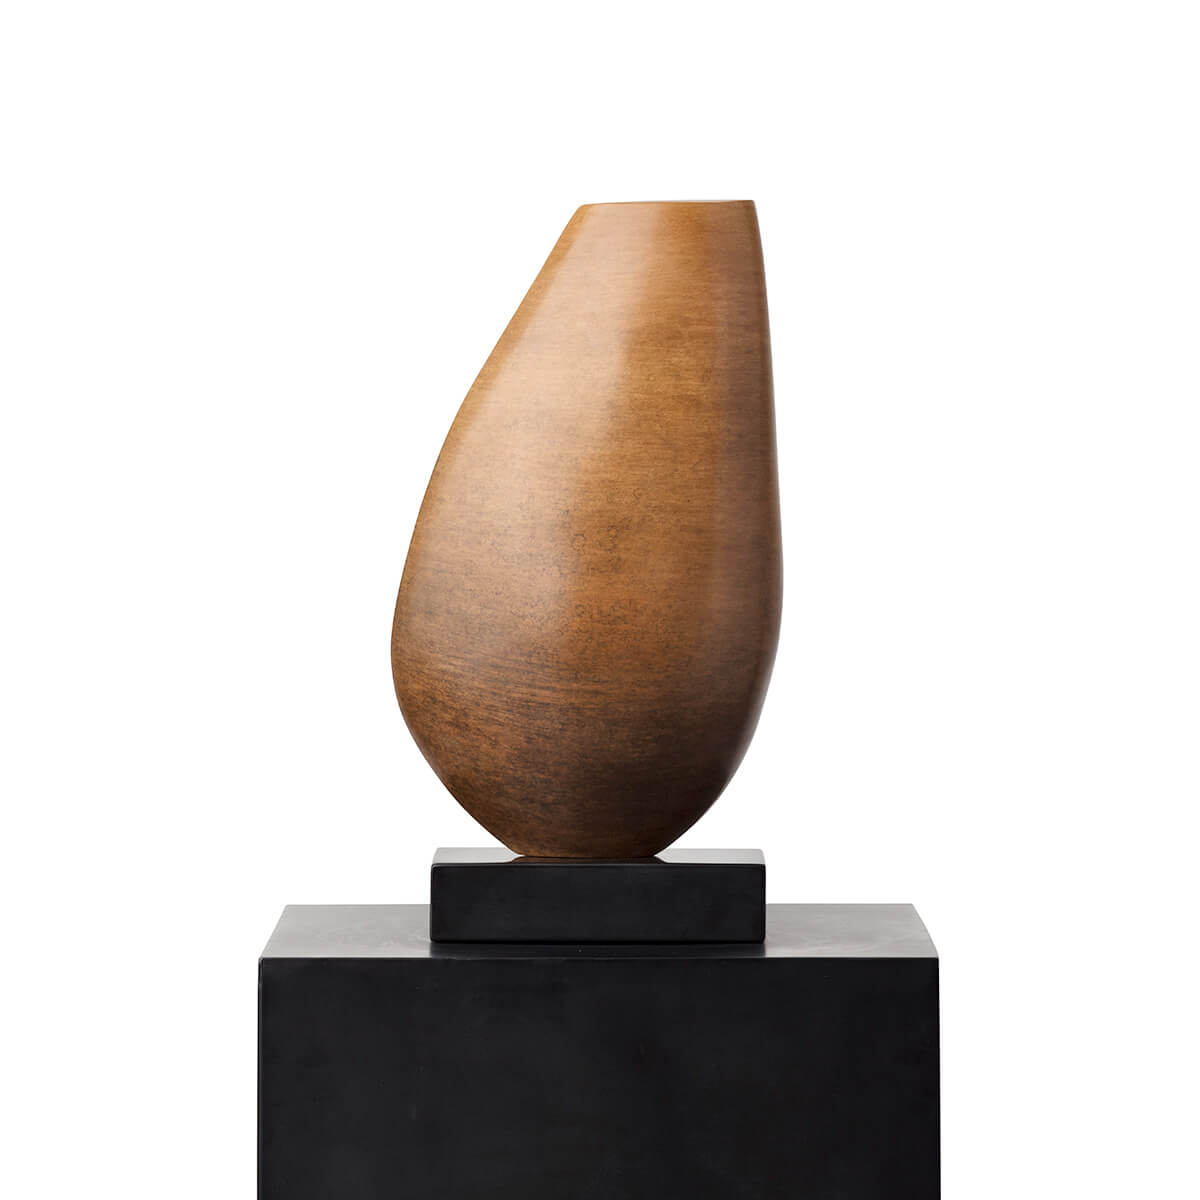 Robert-Helle-Sculpture-Gallery-Tear-Drop-3-1200x1200